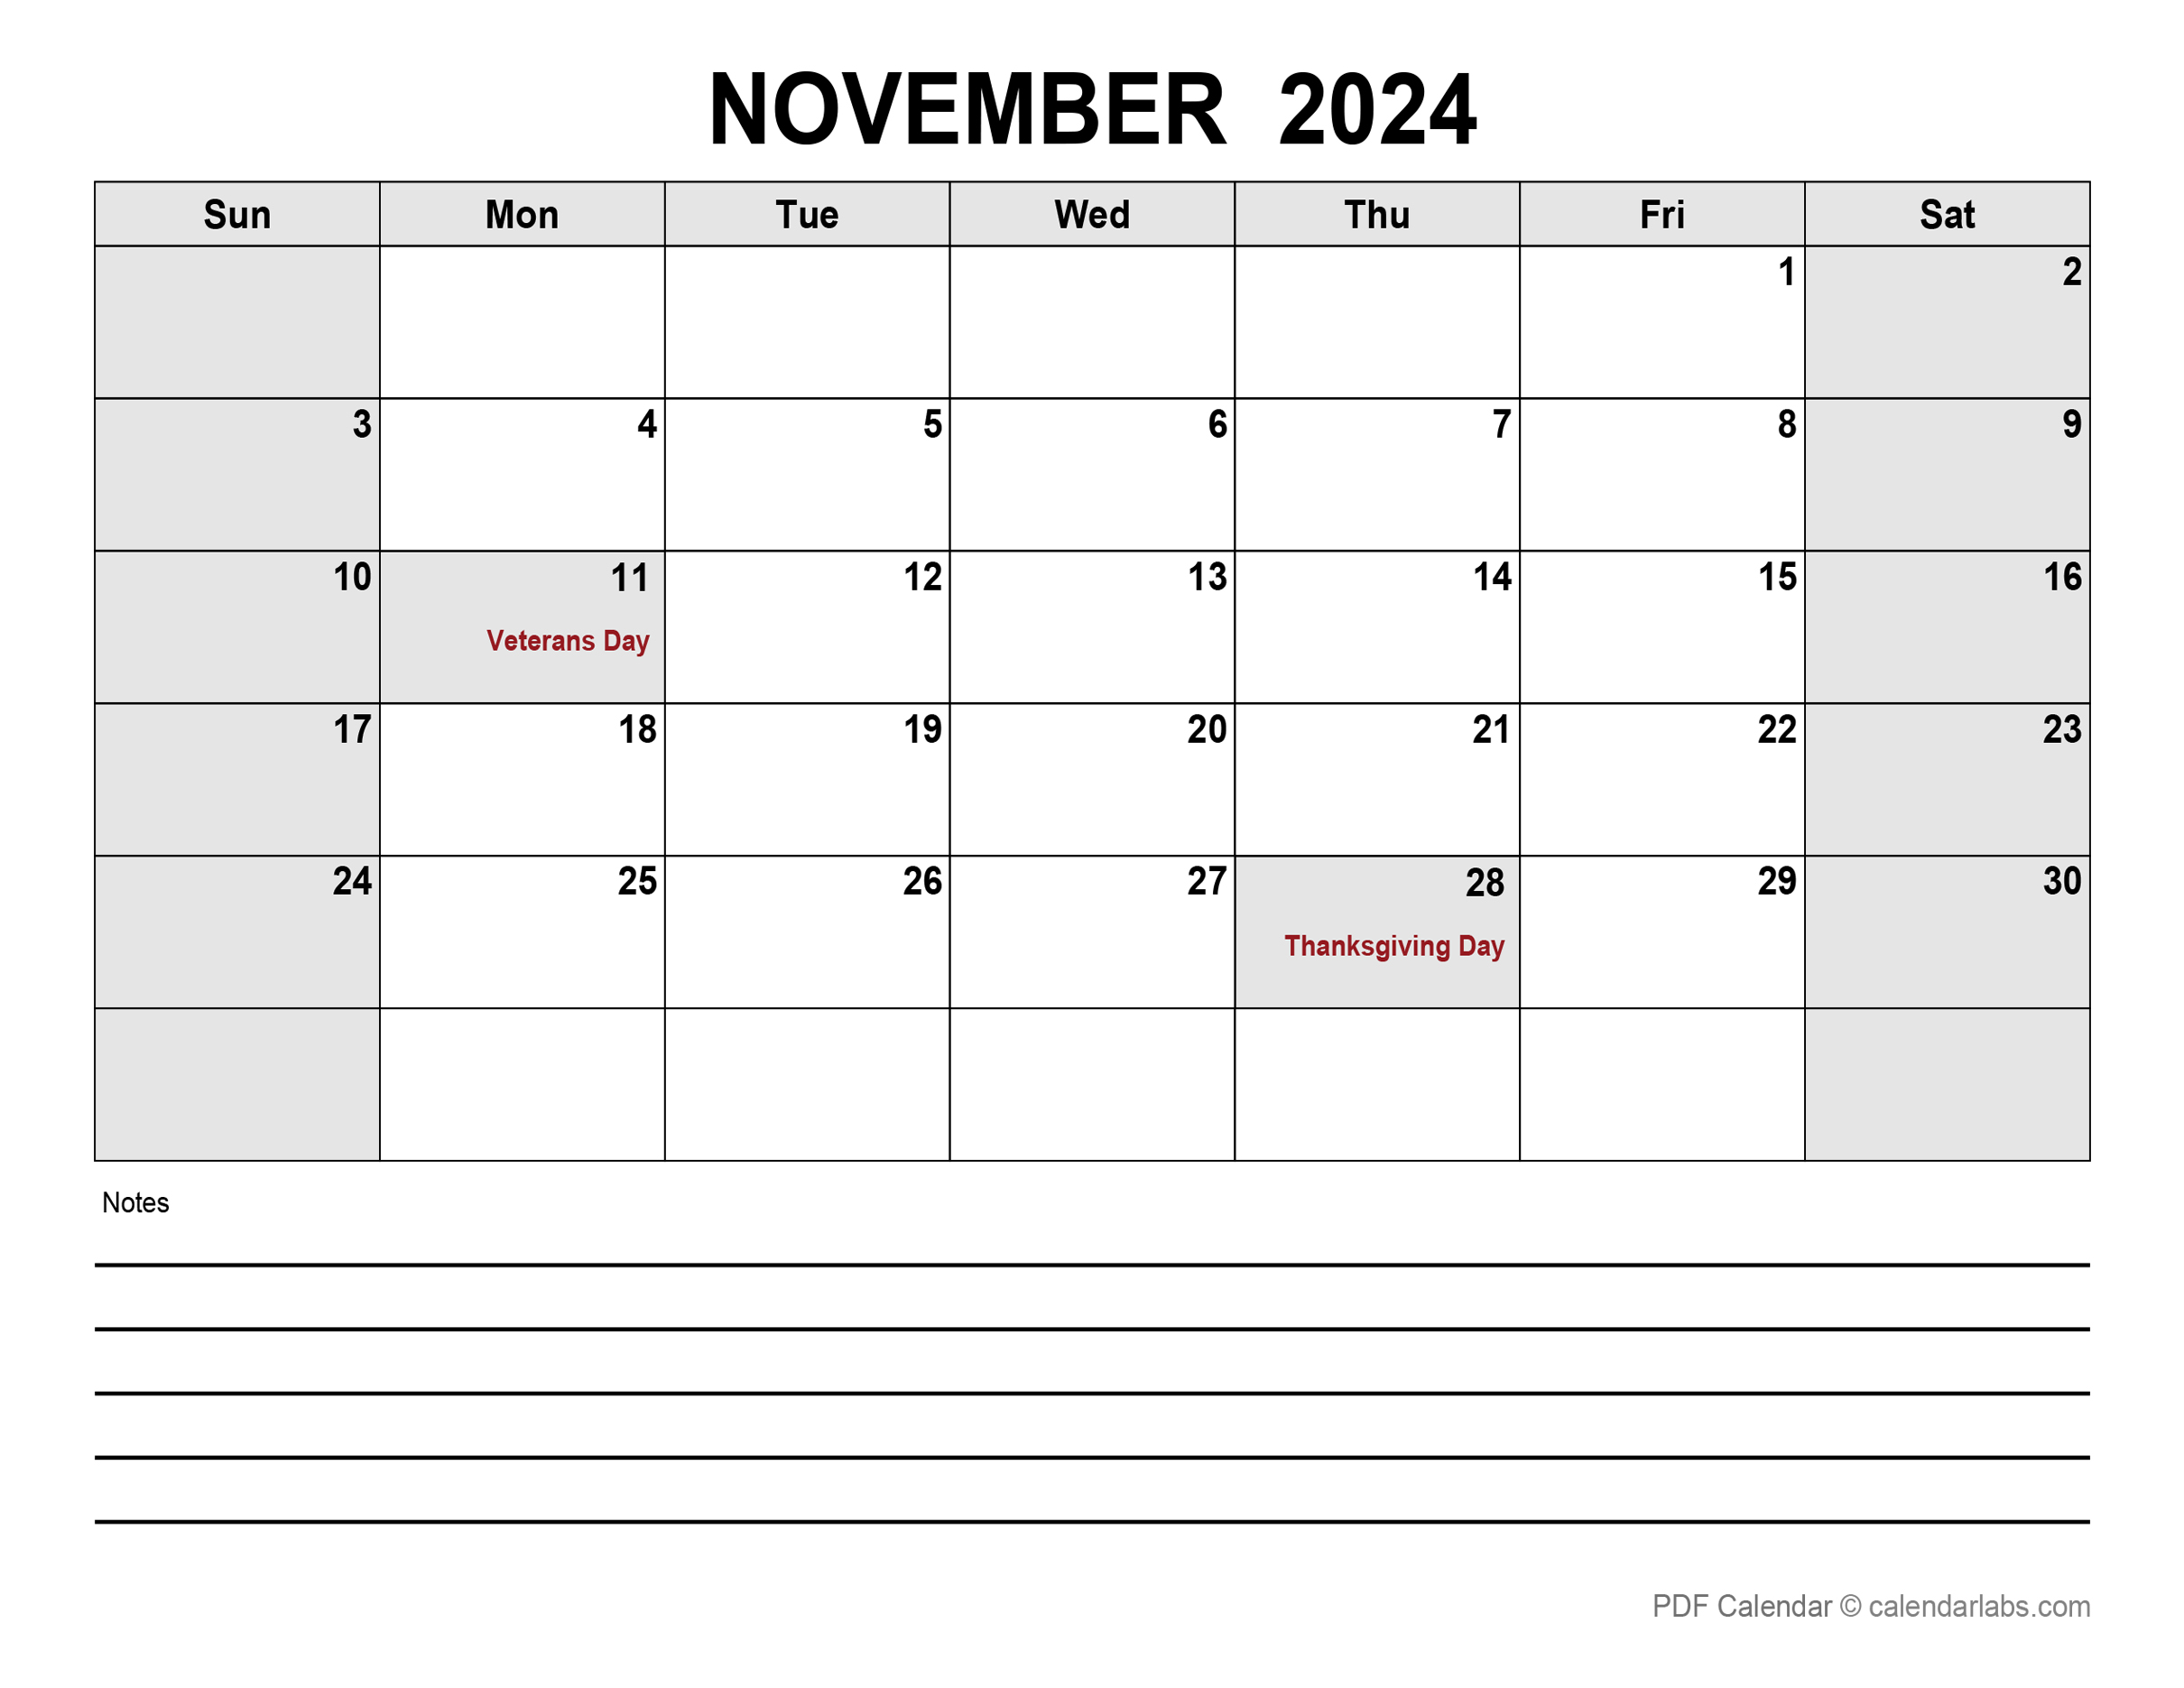 November 2024 Calendar | CalendarLabs